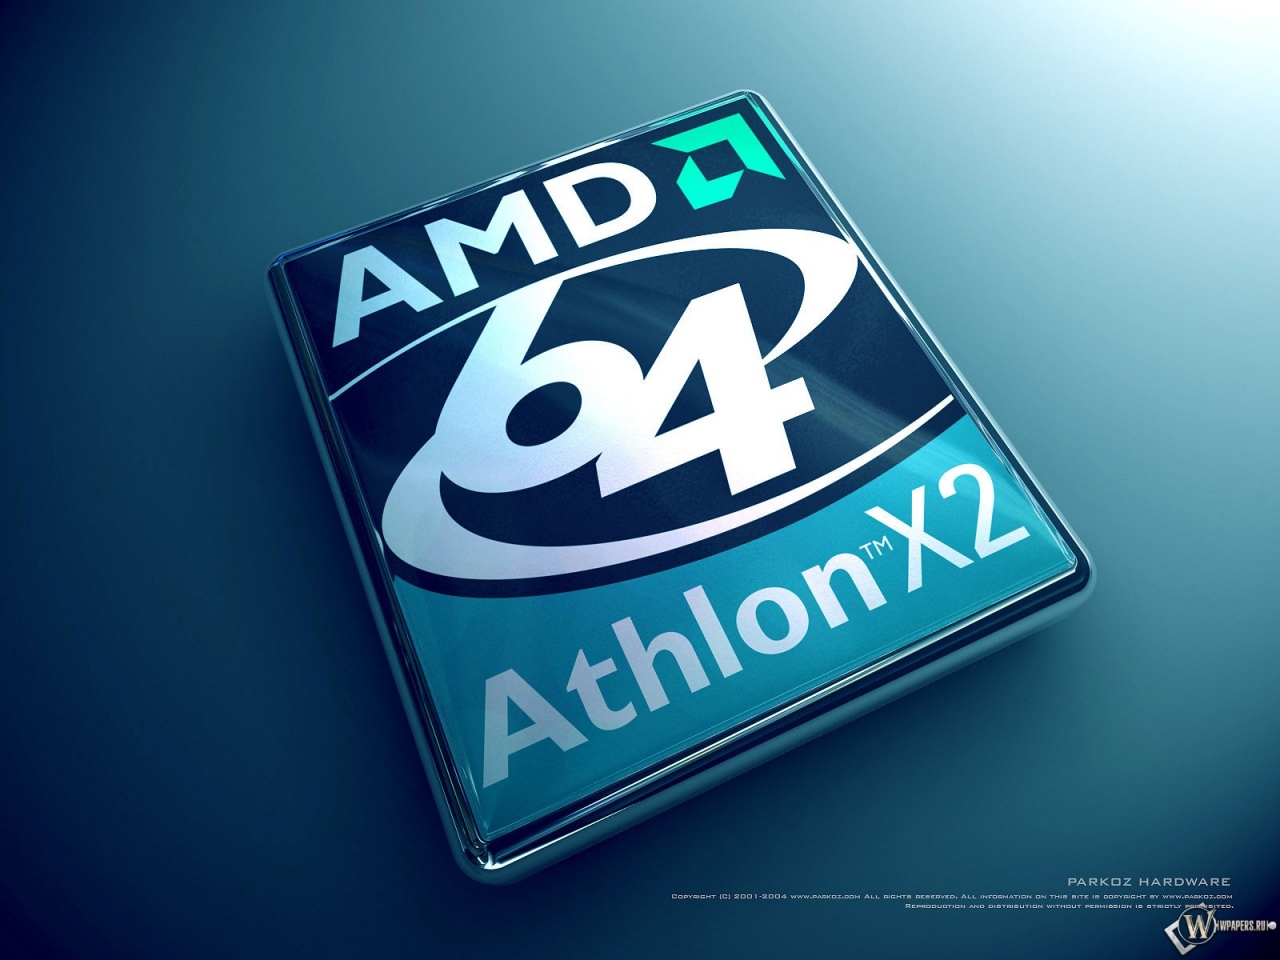 Athlon X2 1280x960